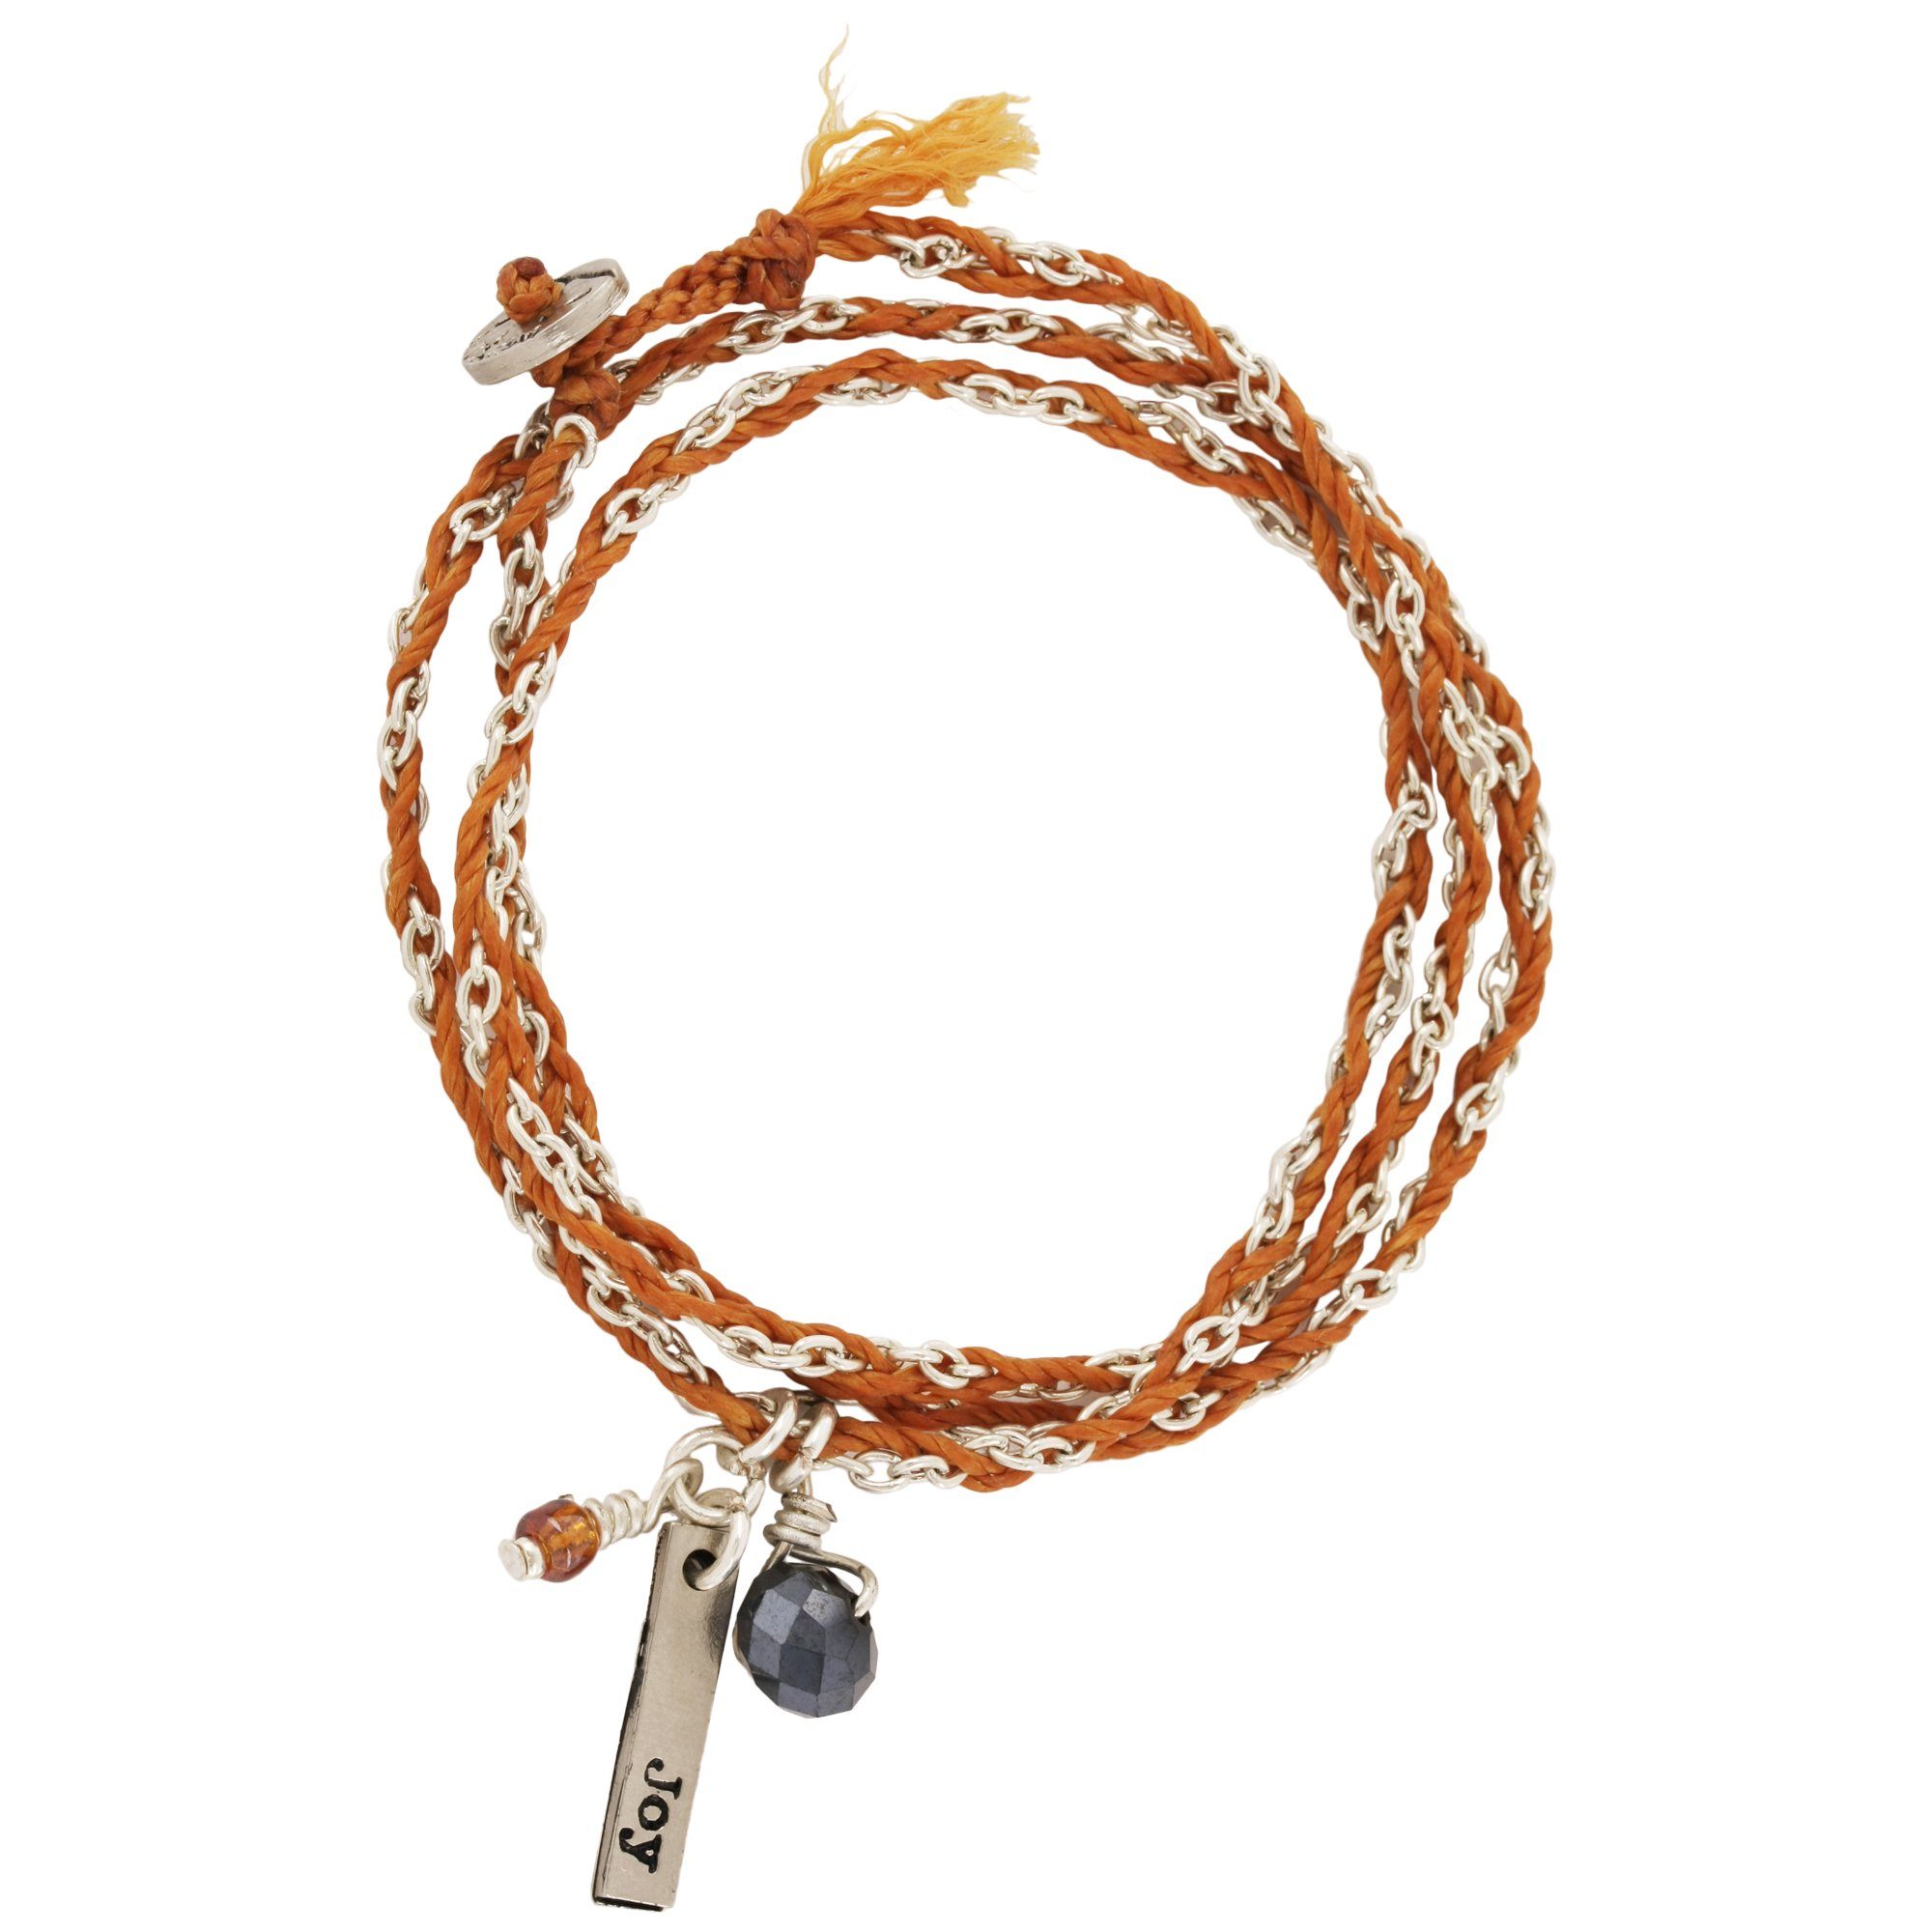 Life's Gifts Woven Necklace/Bracelet - Joy